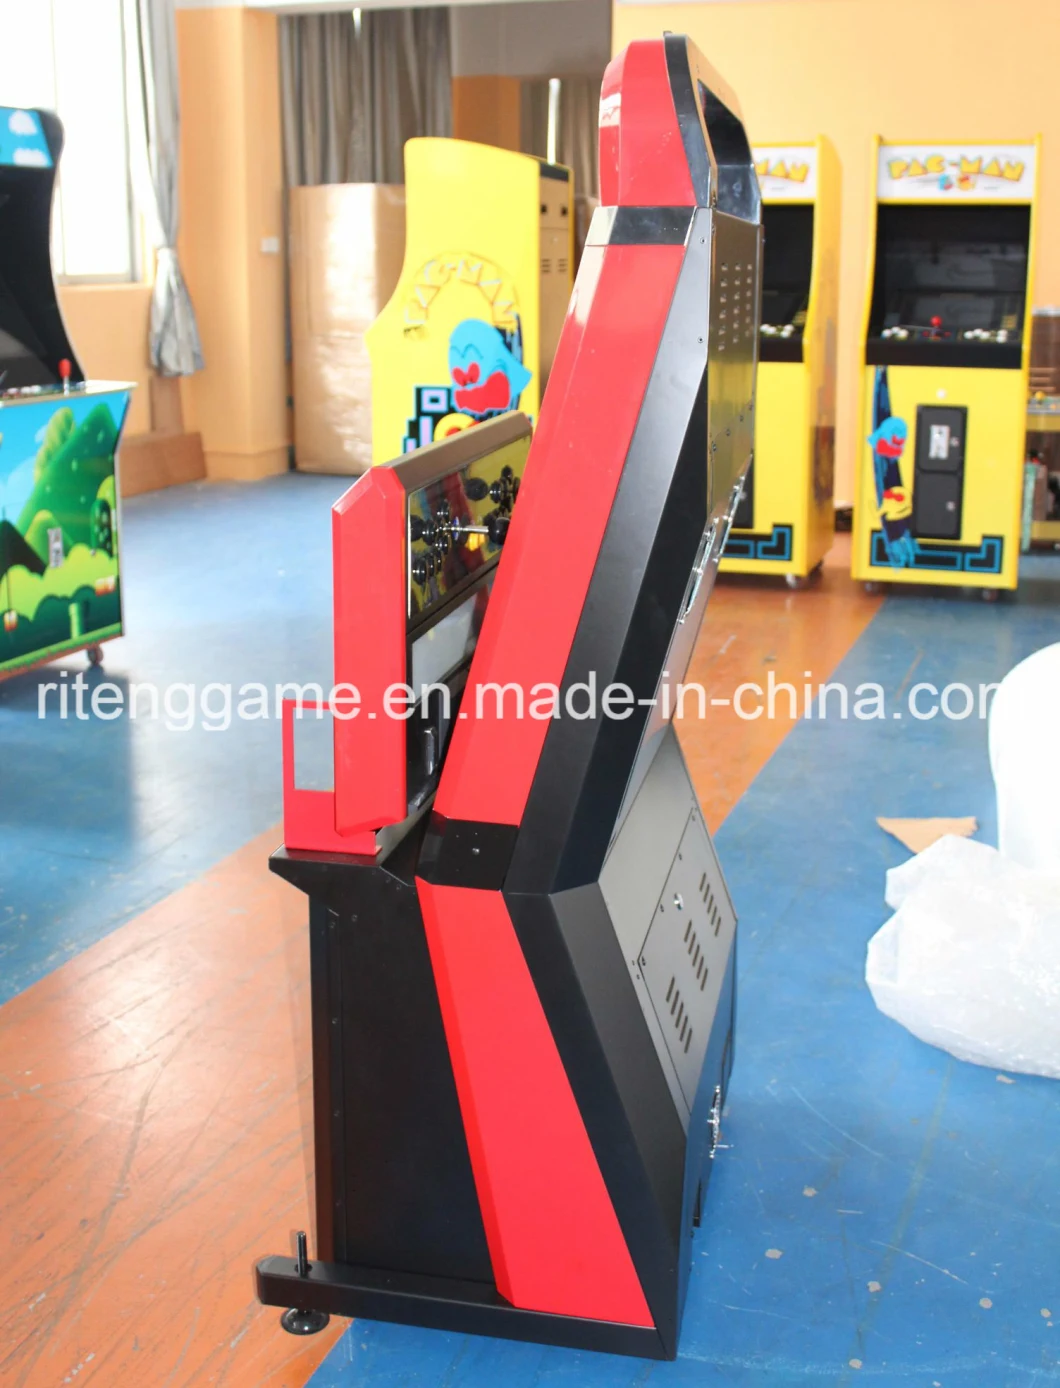 2017 Children Machine 32 Inch Arcade Cabinet Fighting Video Game